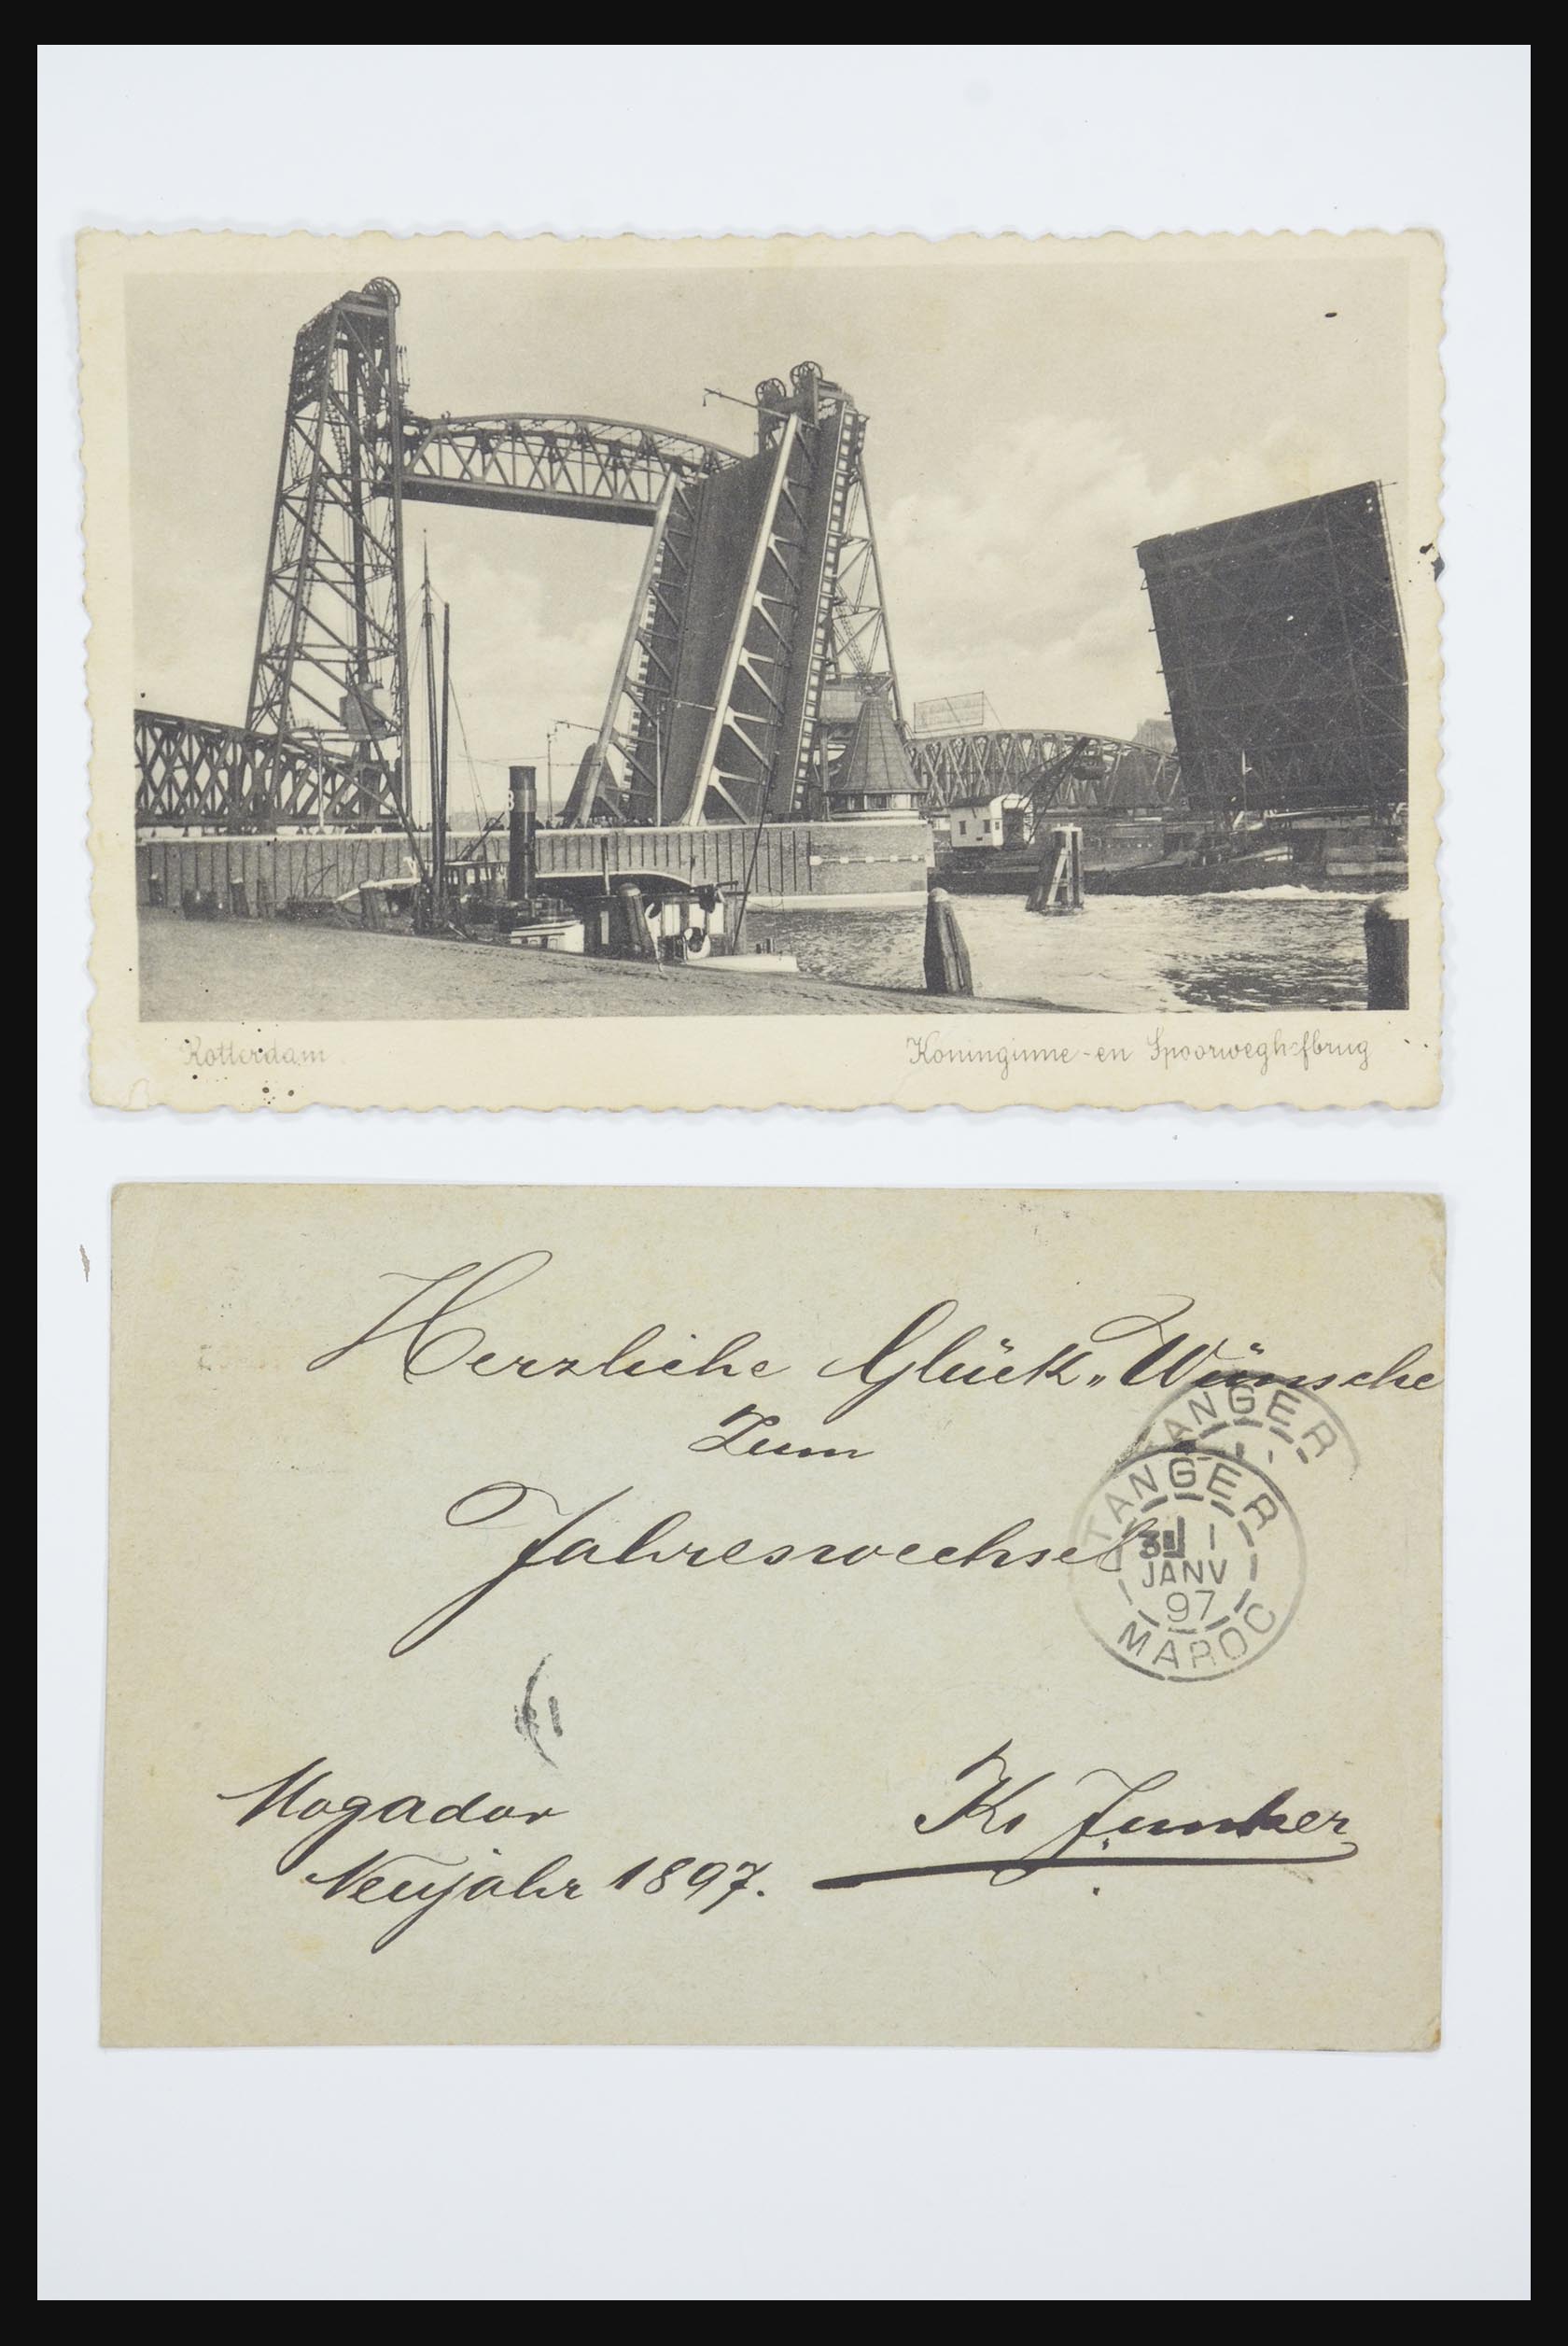 31668 015 - 31668 Nederland ansichtkaarten 1905-1935.